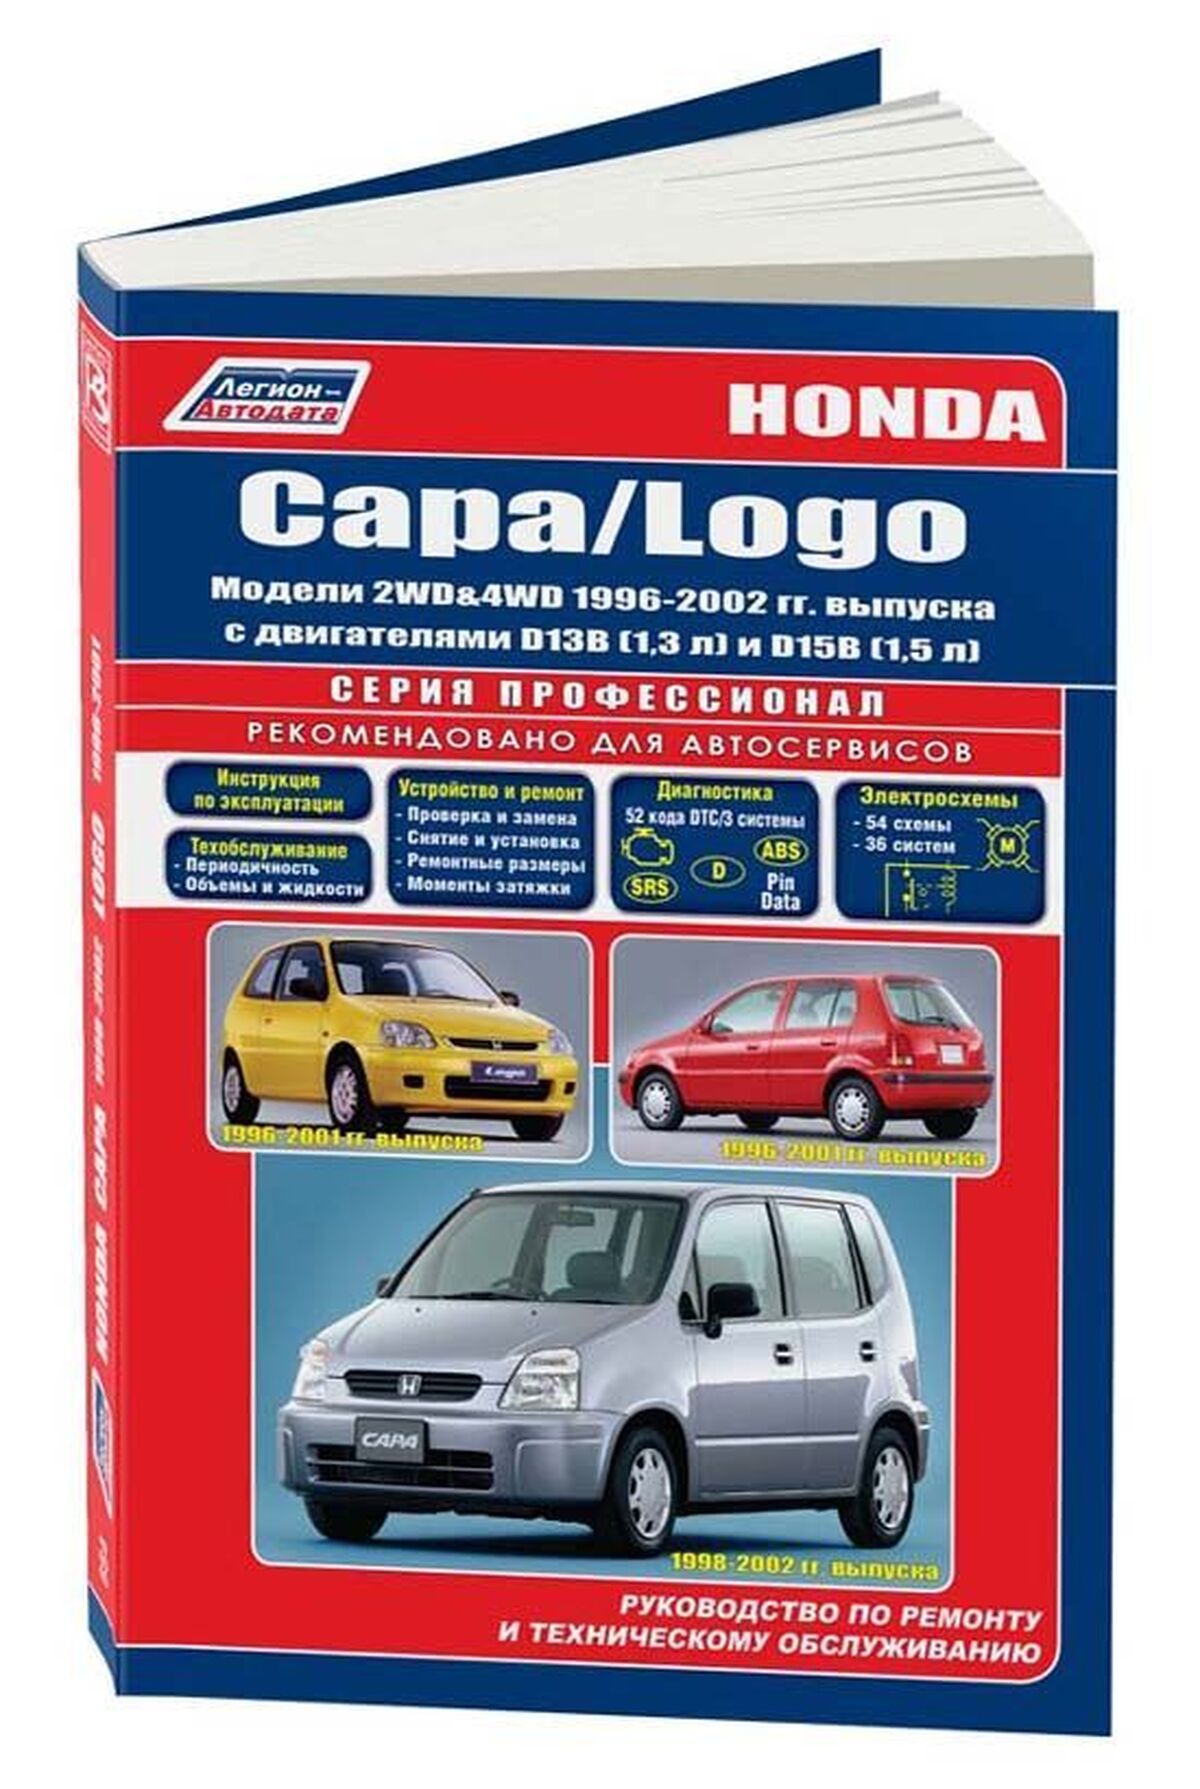 Книга: HONDA CAPA / LOGO (б) 1996-2002 г.в., рем., экспл., то | Легион-Aвтодата